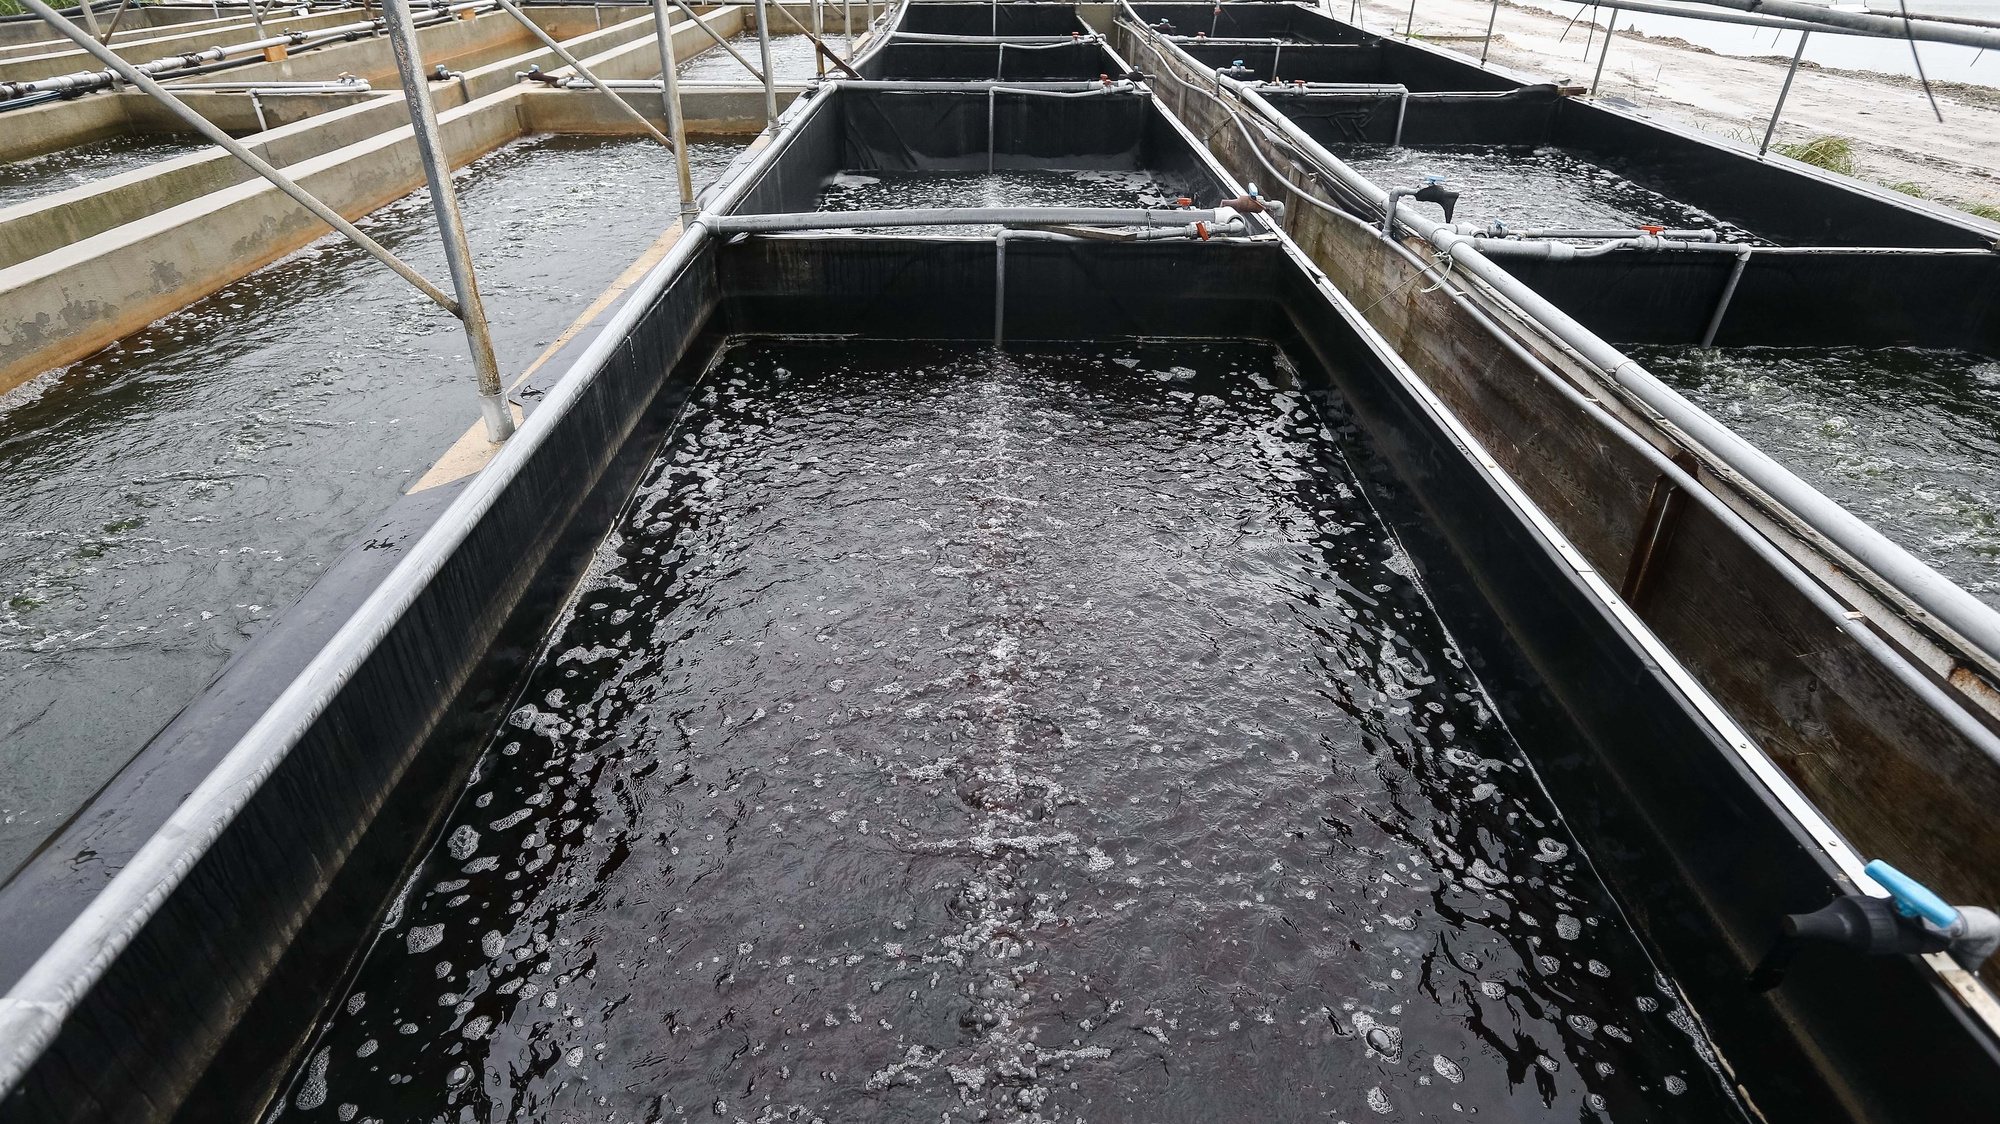 Instalações da Algaplus, empresa “de produção primária, aliada à biotecnologia azul, que tem por objeto principal o cultivo das algas”, nas antigas marinhas de sal que são hoje o cenário de demonstração internacional de aquacultura multitrófica e produção de macroalgas, no Bolho da Malhada, em Ílhavo, 30 de janeiro de 2020. (ACOMPANHA TEXTO DO DIA 09 DE FEVEREIRO DE 2020). PAULO NOVAIS/LUSA